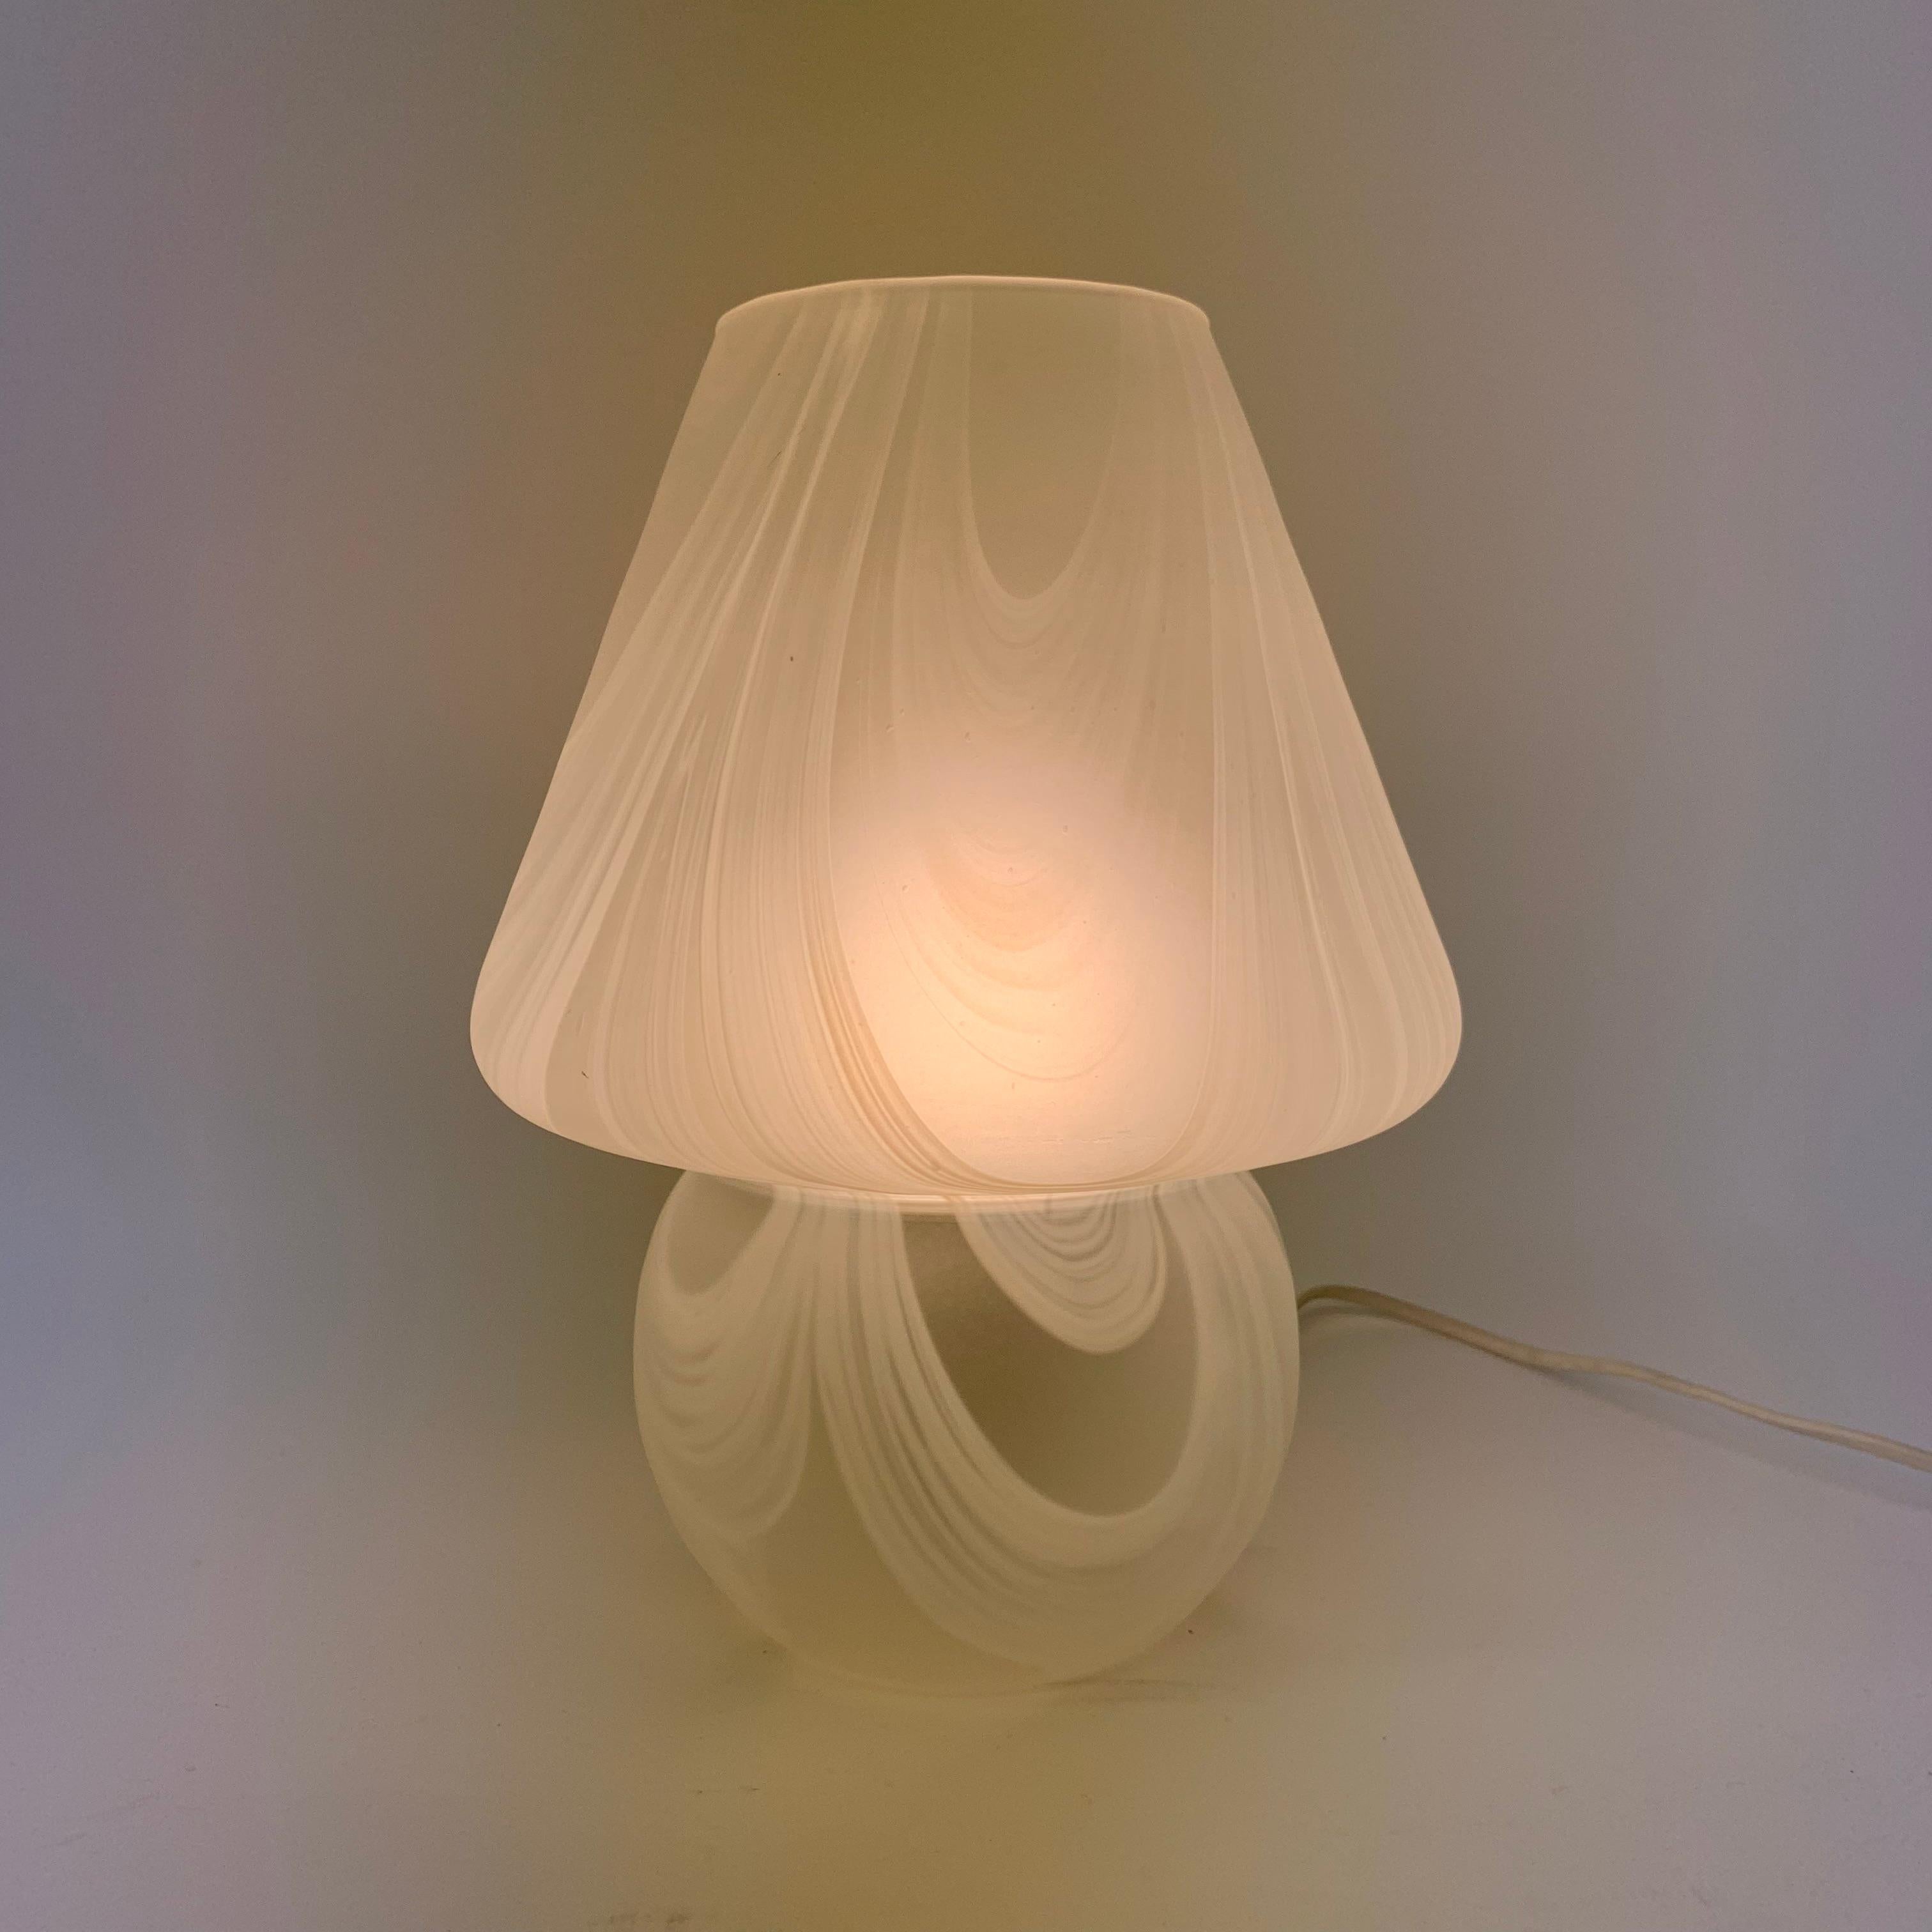 1970s mushroom lamp